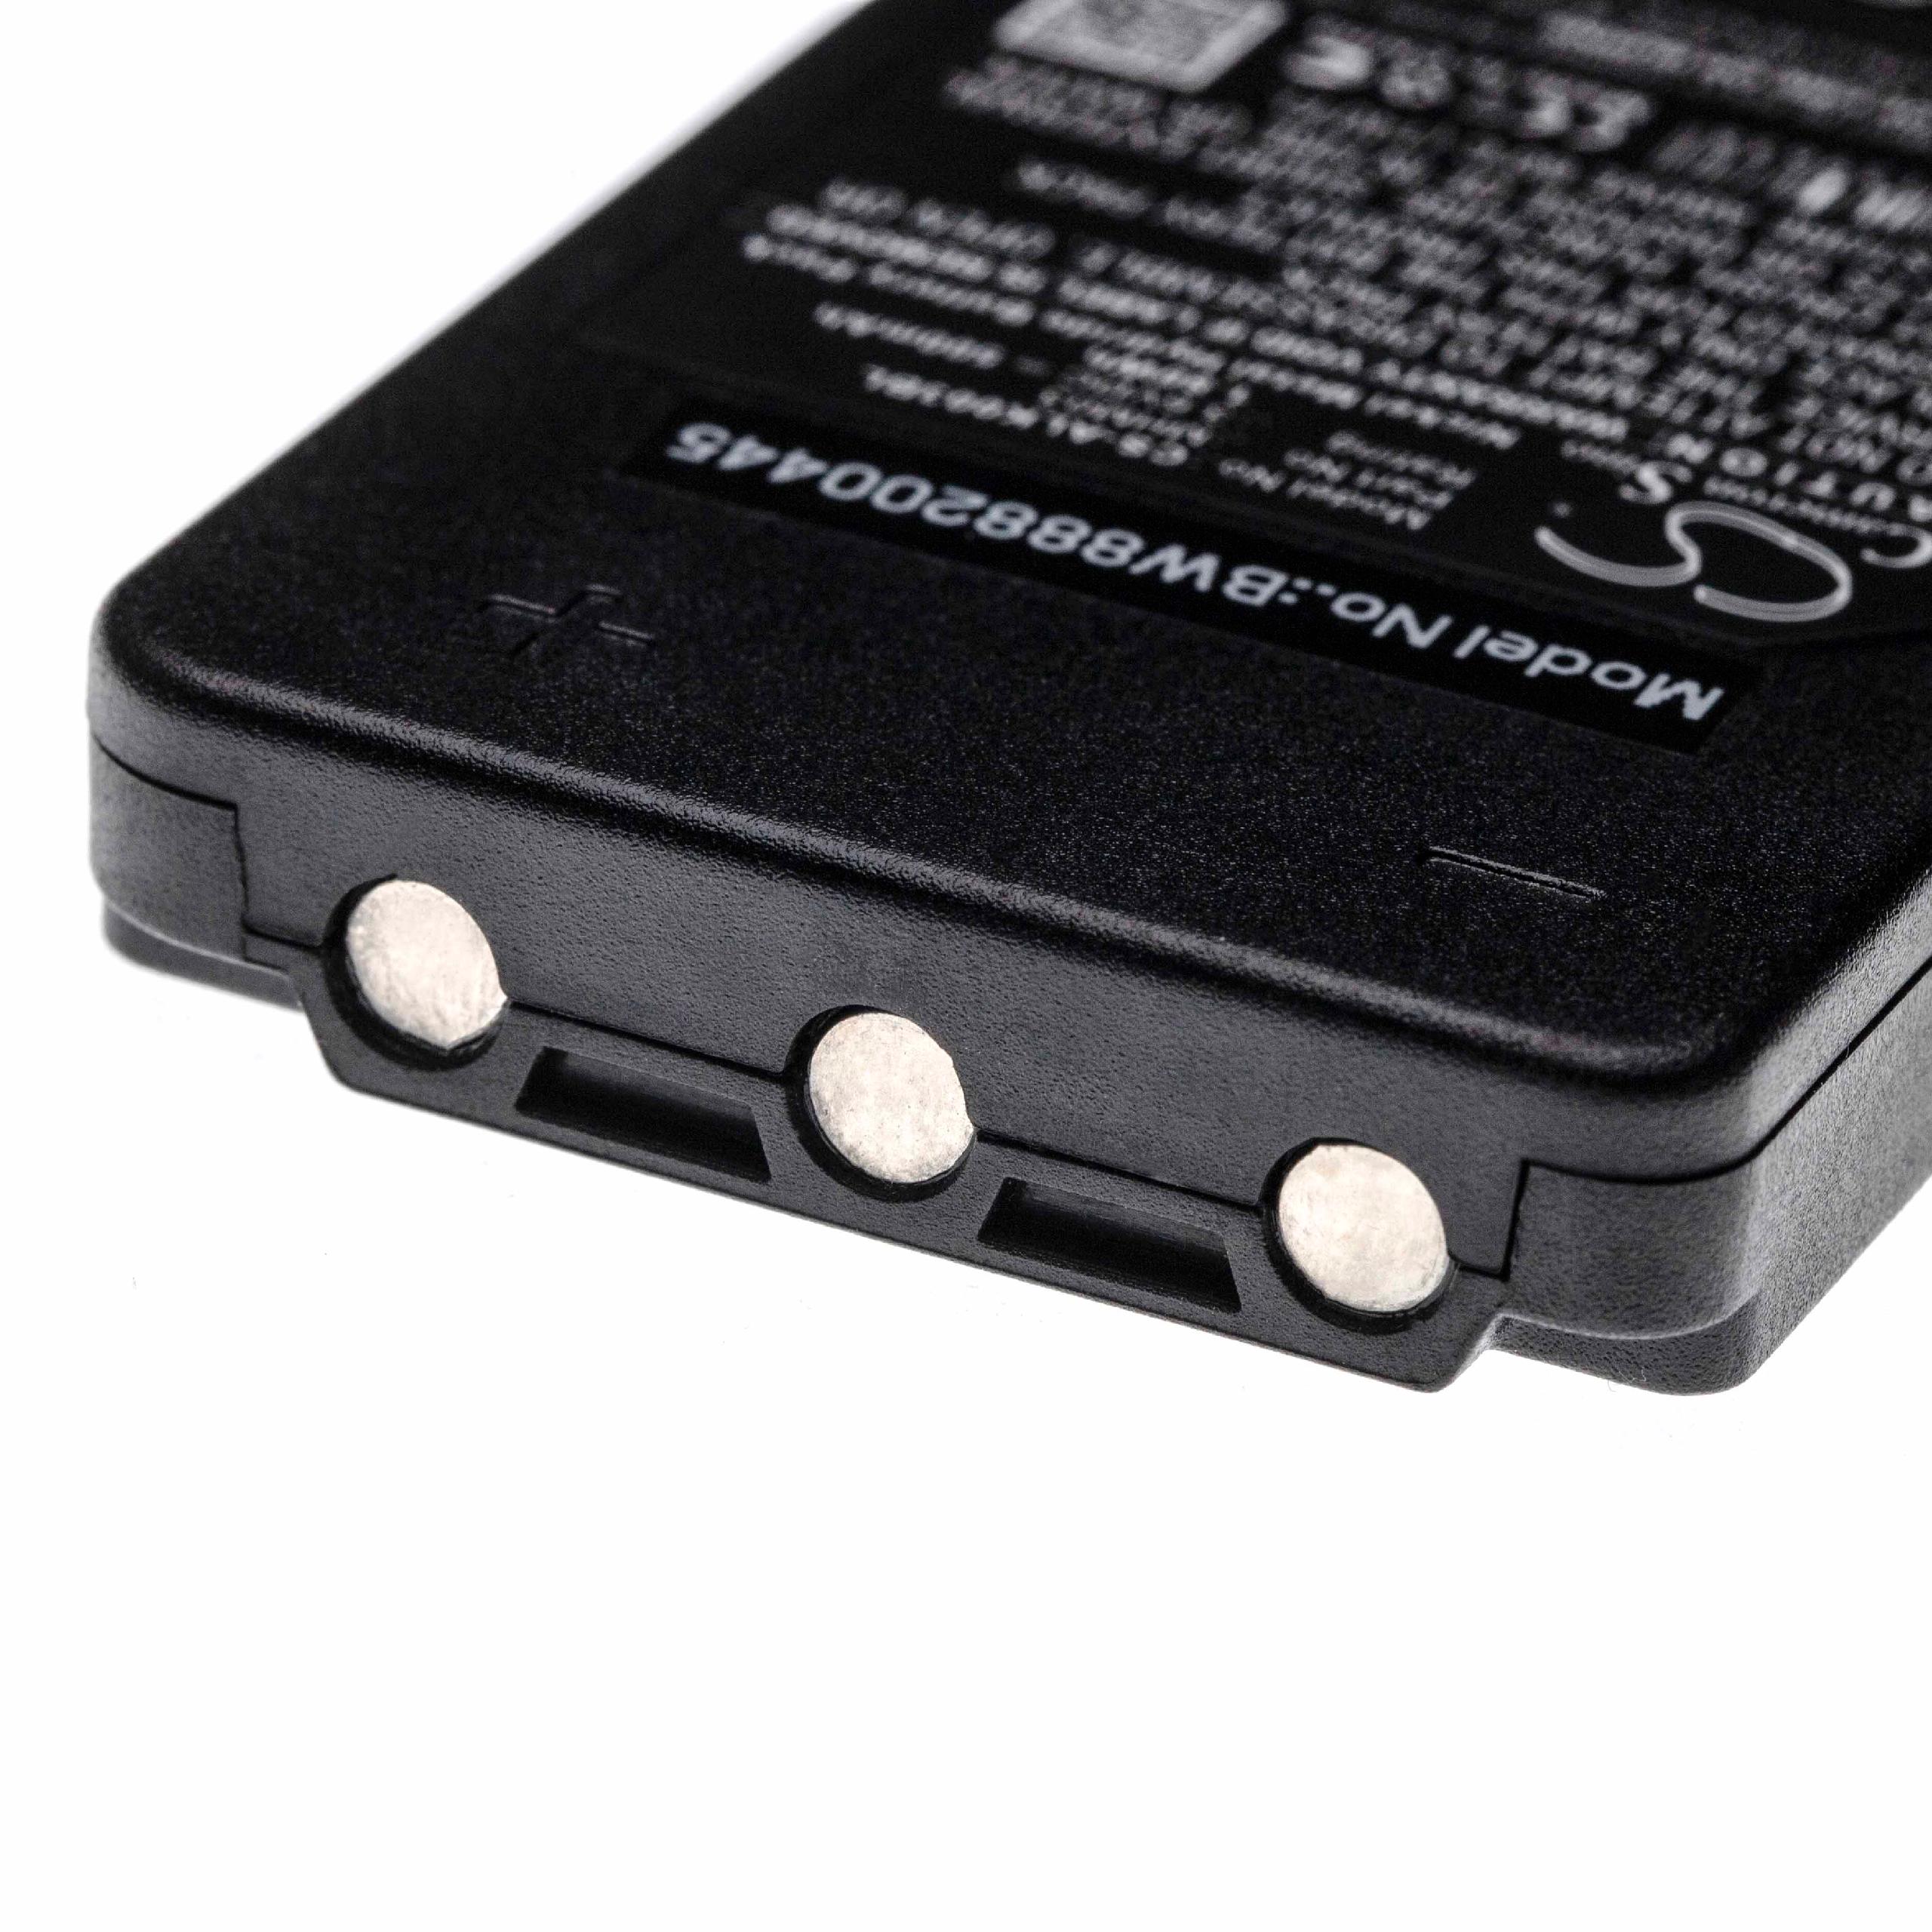 Batterie remplace Autec MHM03, LPM01LI, LPM01, R0BATT00E10A0 pour télécomande industrielle - 500mAh 3,6V NiMH